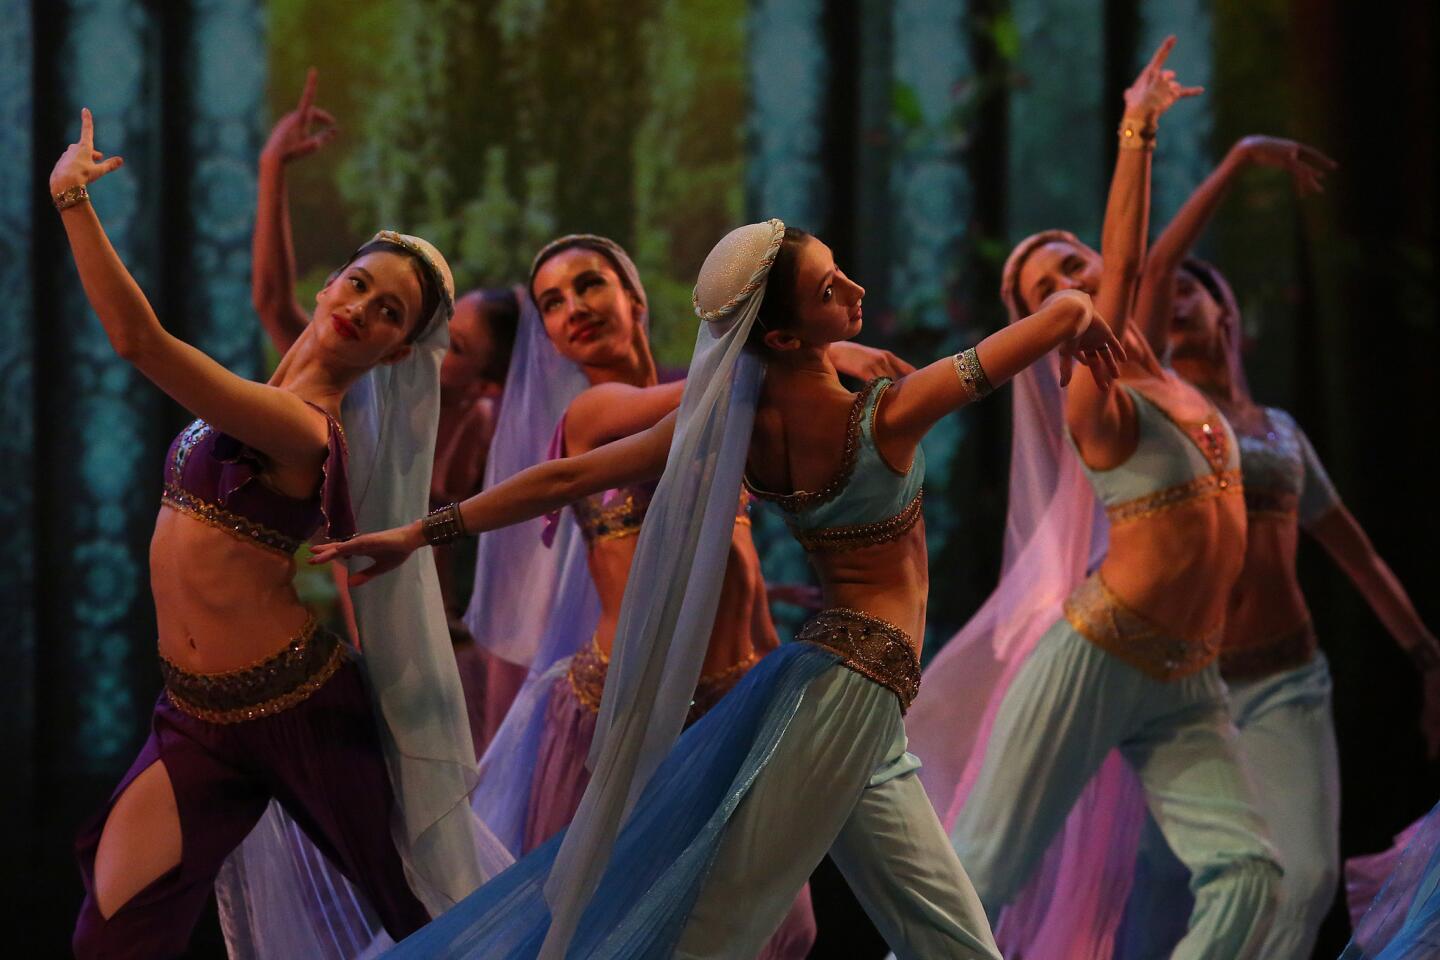 Mikhailovsky Ballet, with costumes by Tatiana Yastrebova.